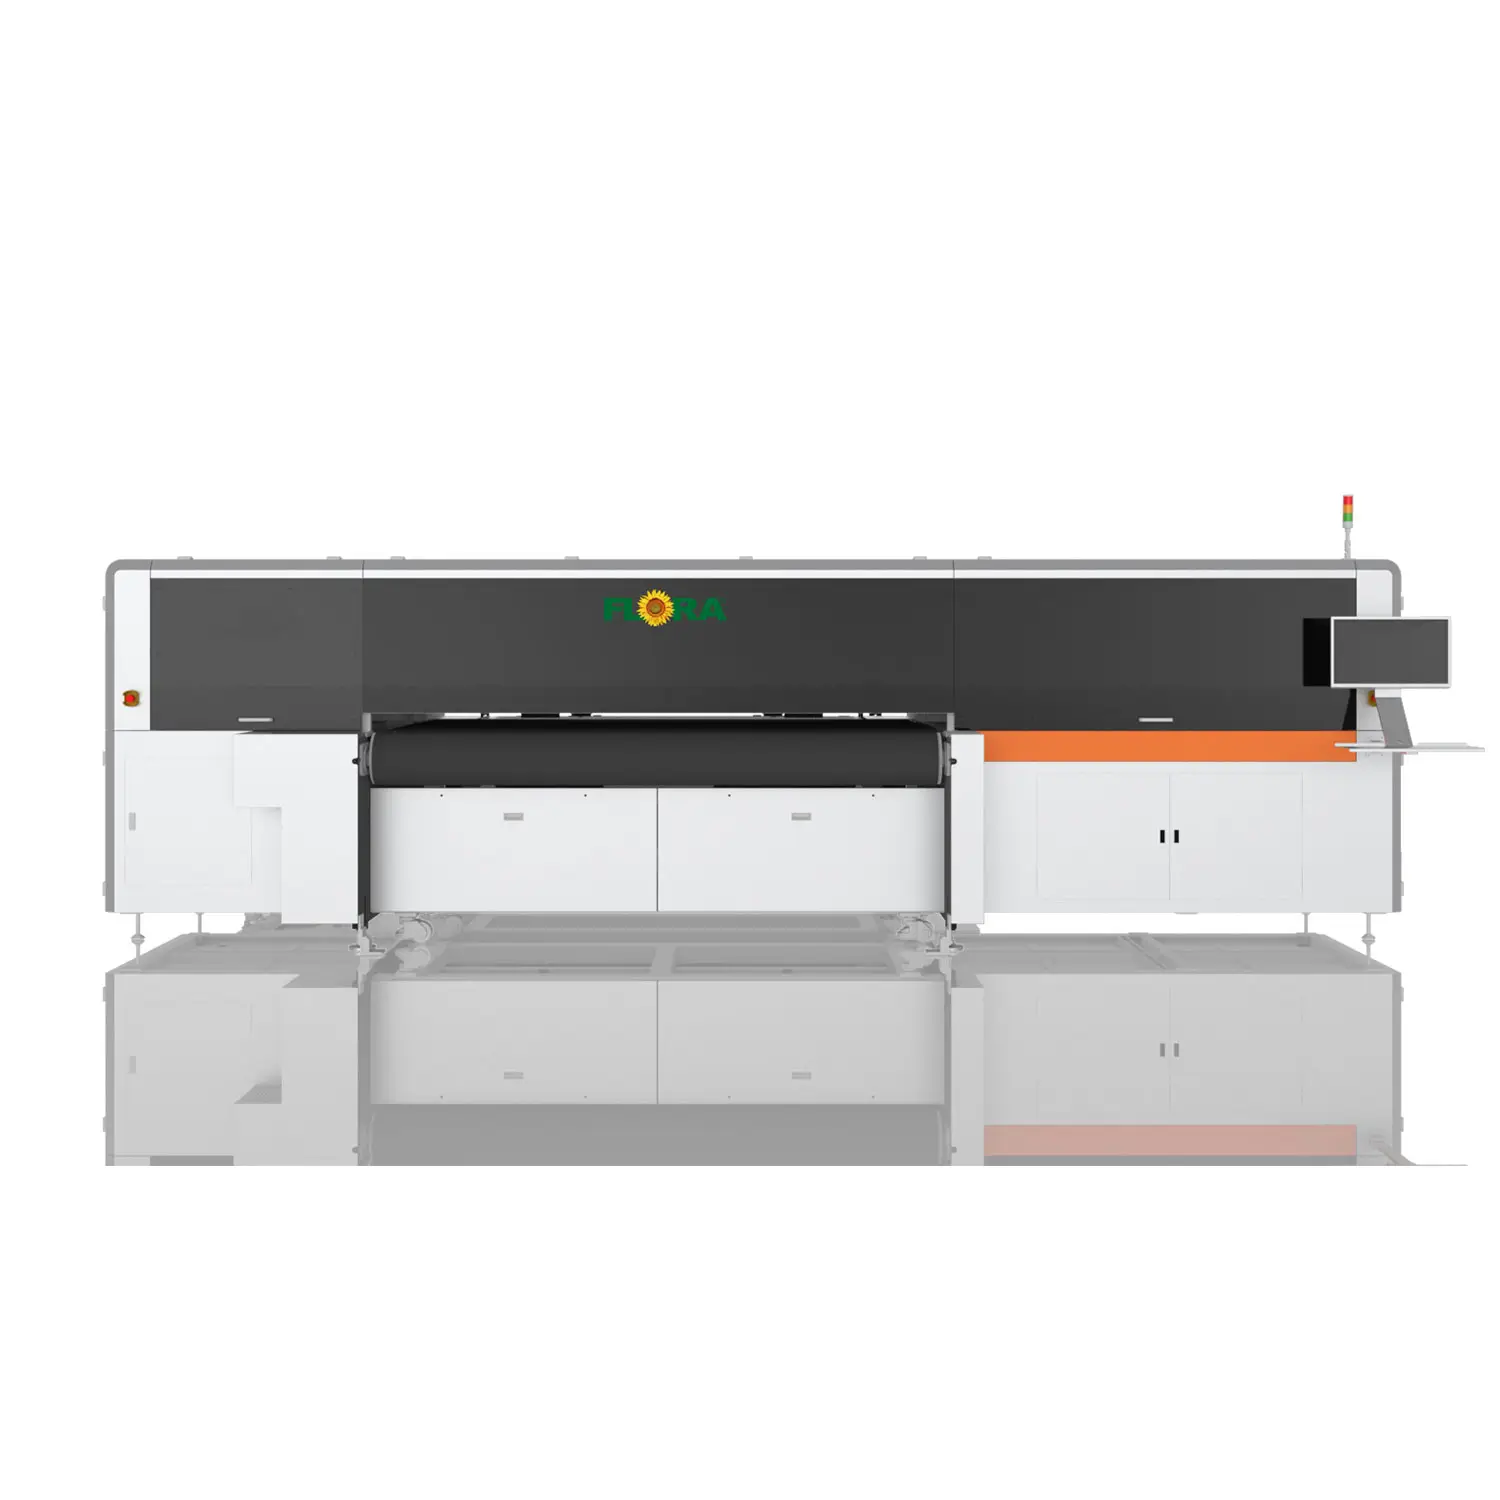 Flora CMYK oluklu paket baskı 2.5m A2 A3 A4 Epson 3200 mürekkep püskürtmeli düz platform UV yazıcı düz yatak için geniş Format yazıcı akrilik